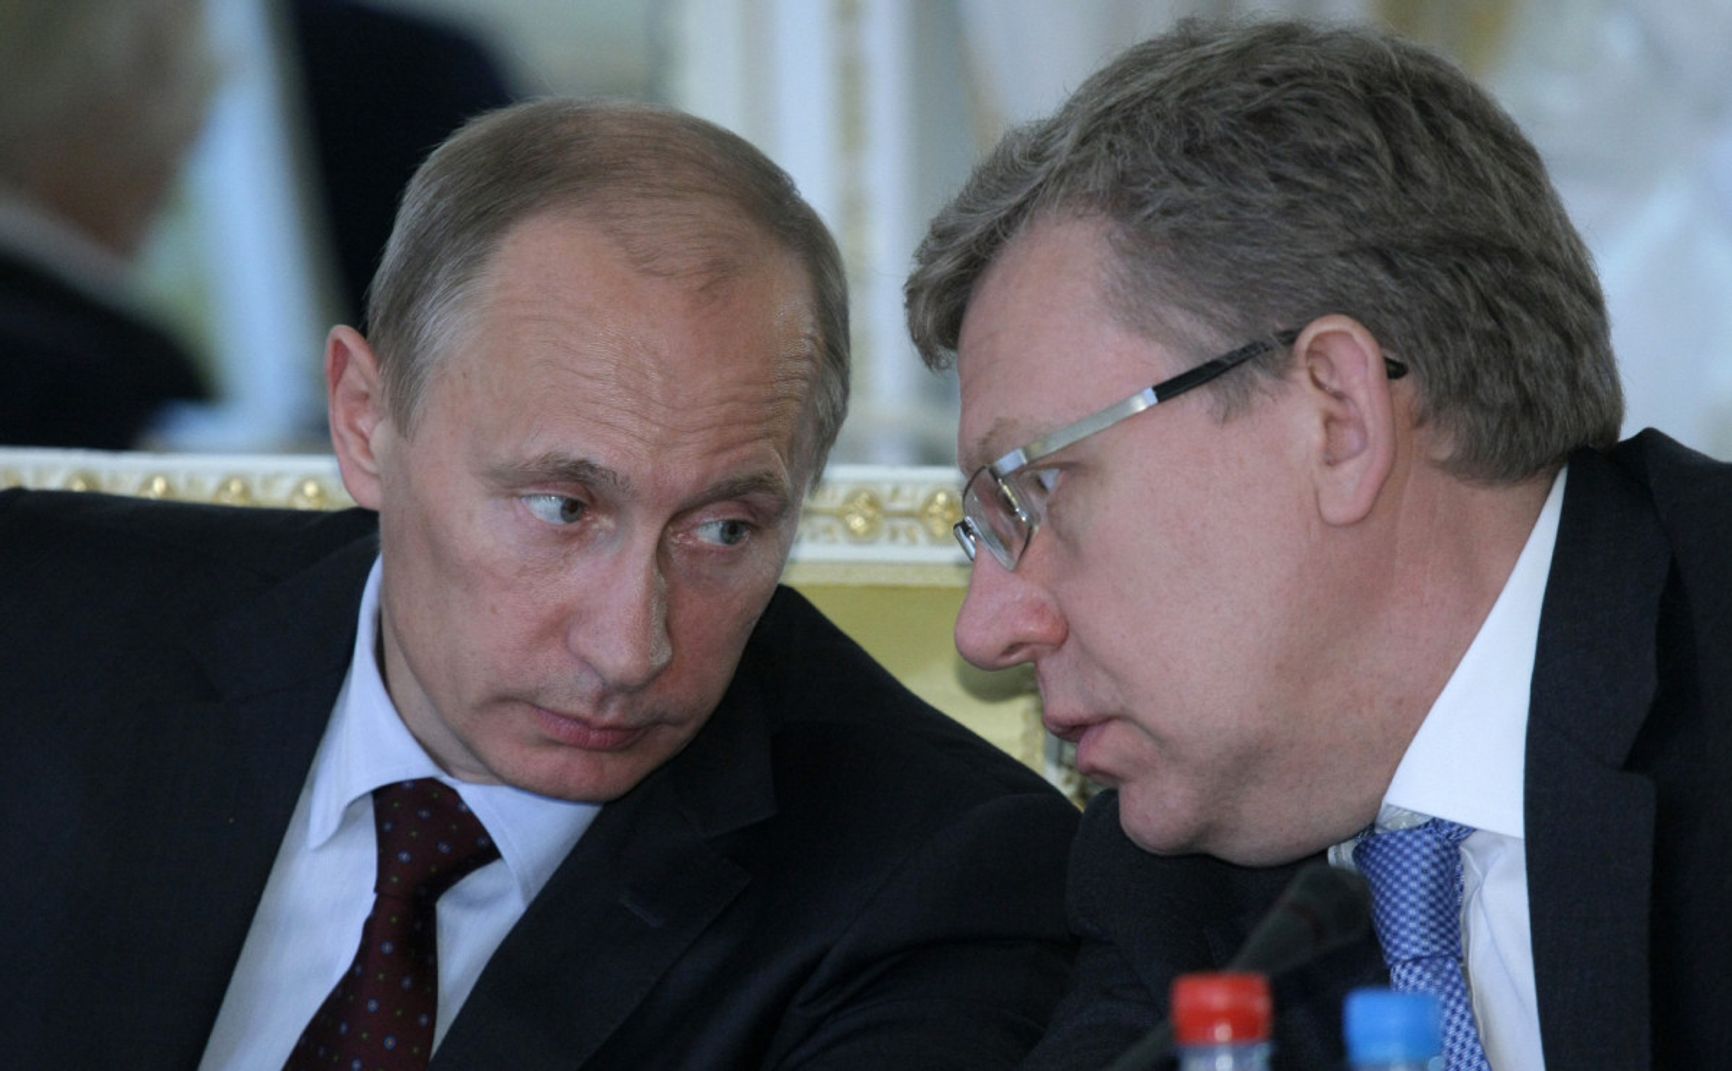 Кудрин попросил разрешения у Путина перейти из Счетной палаты в «Яндекс» — «Медуза»